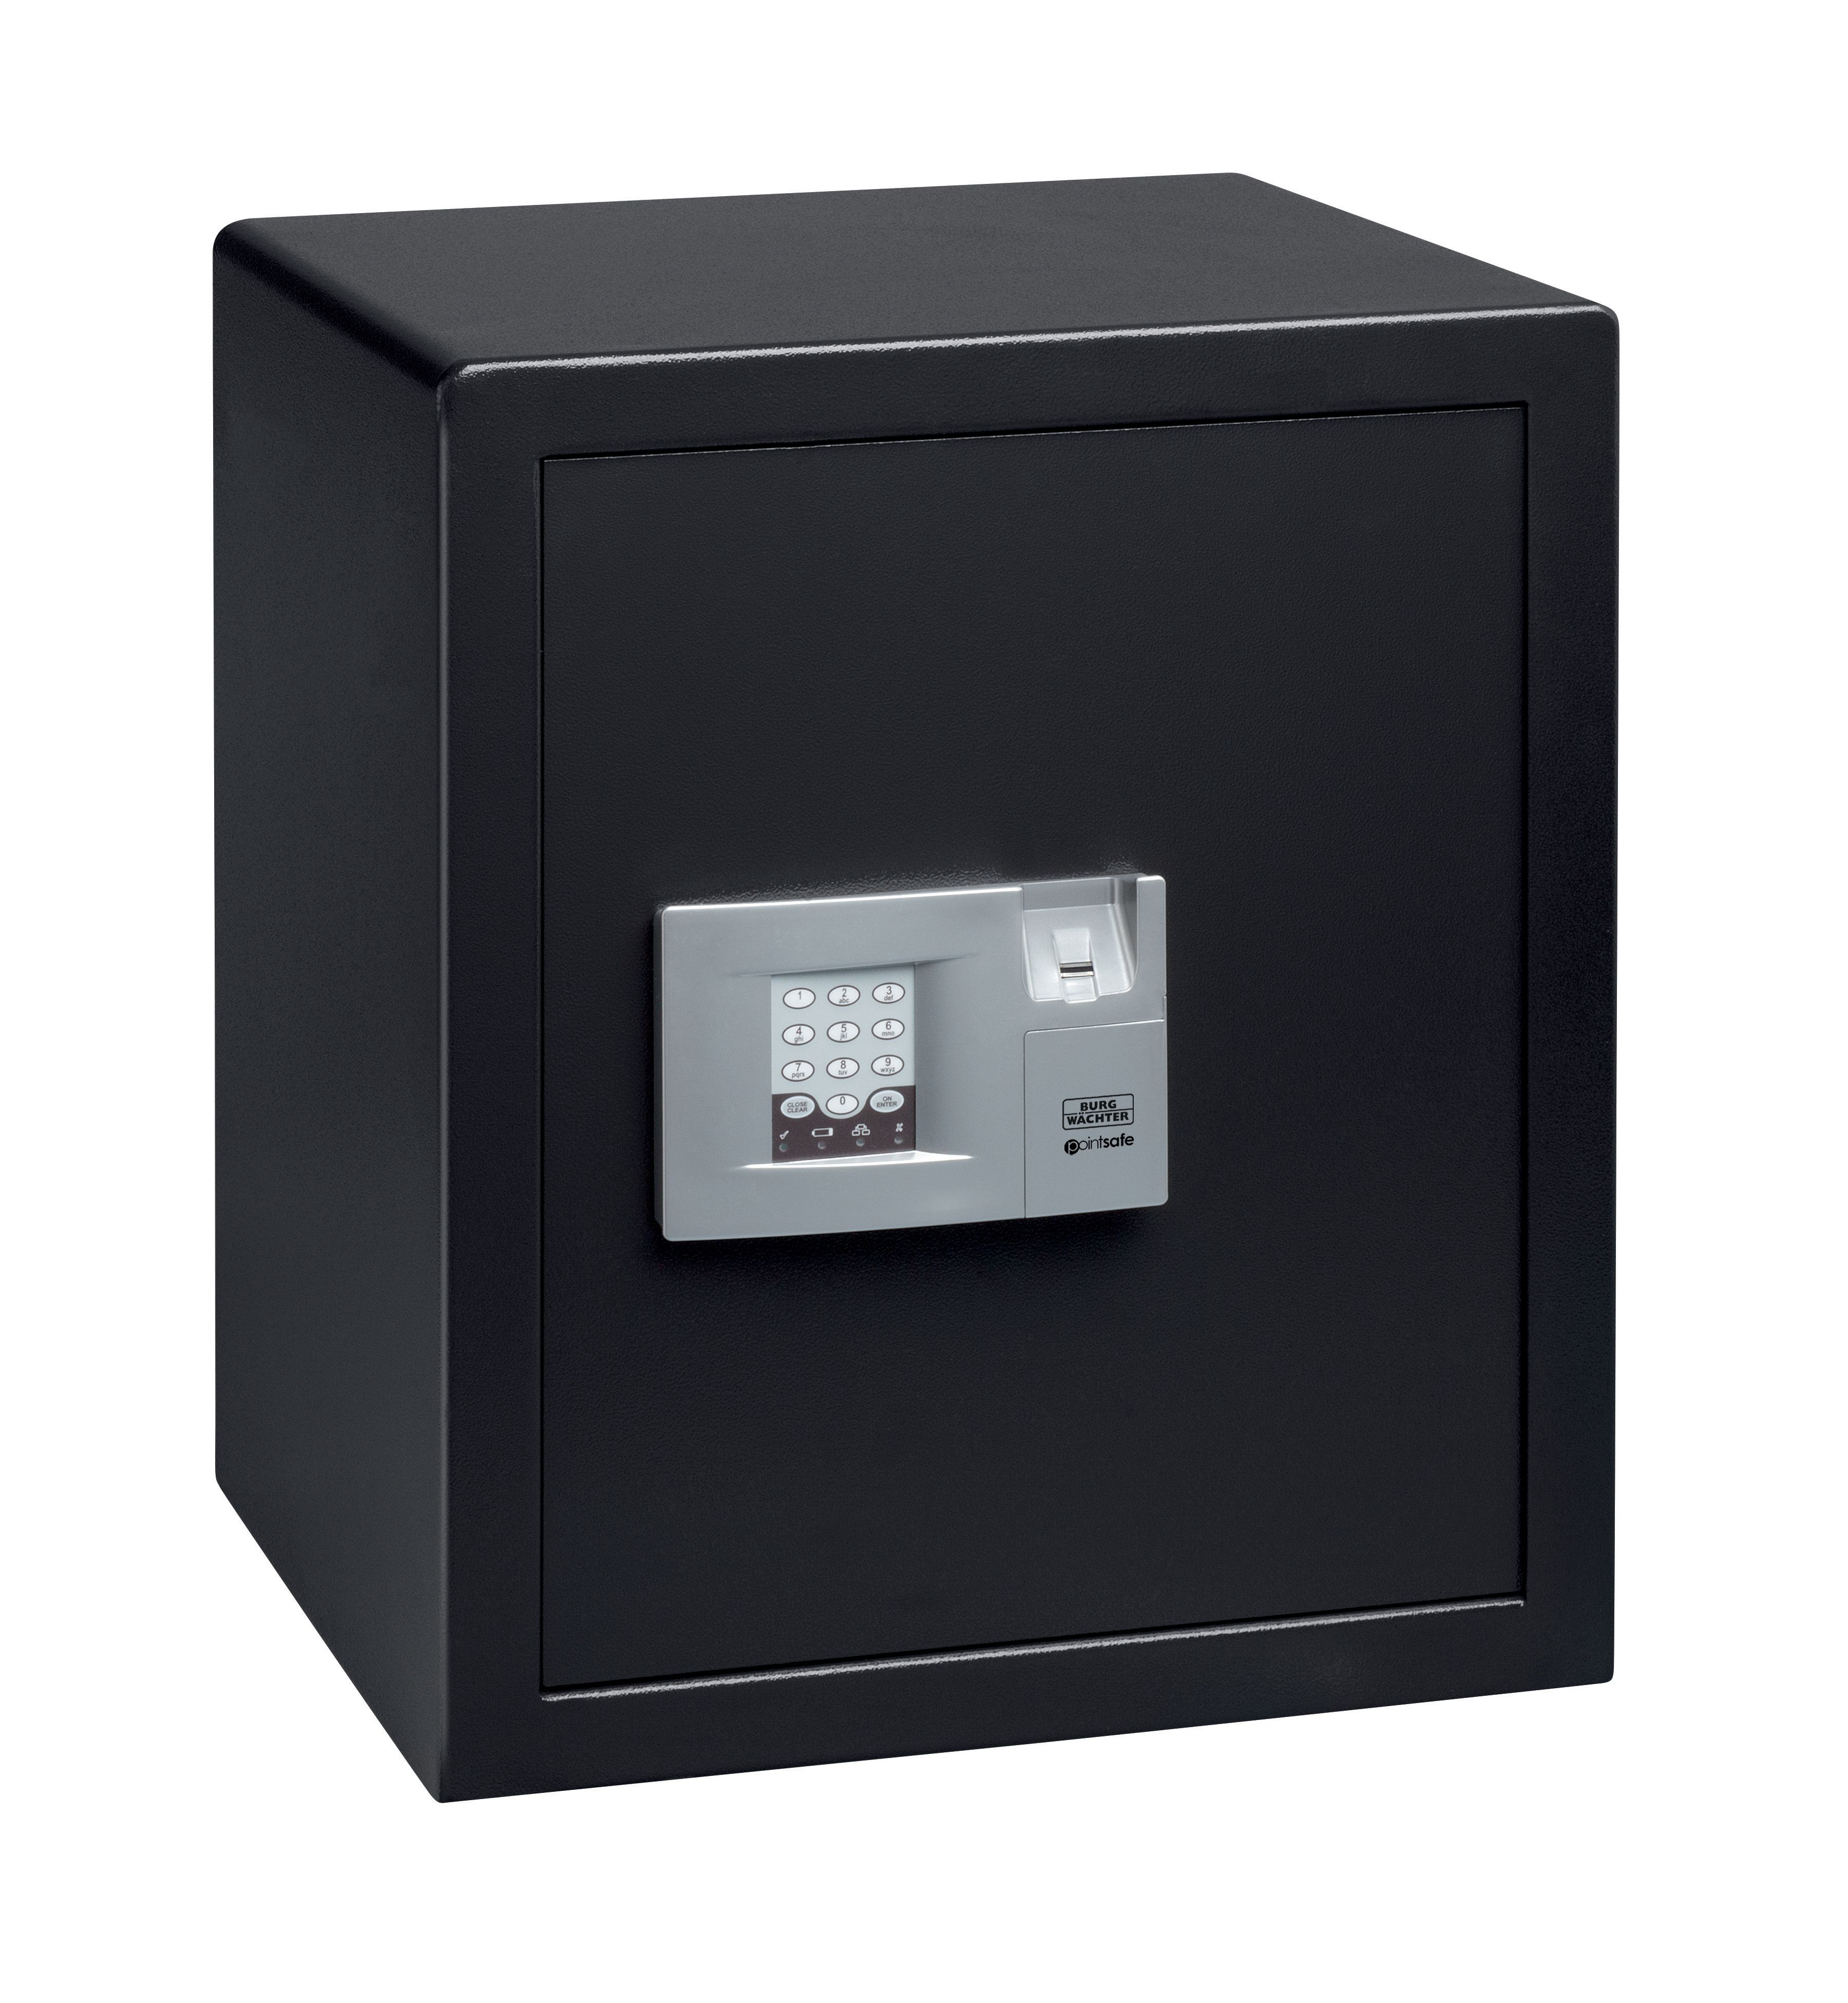 Image of Burg-Wachter Black Pointsafe Electronic Home Safe with Fingerscan - 57.9L